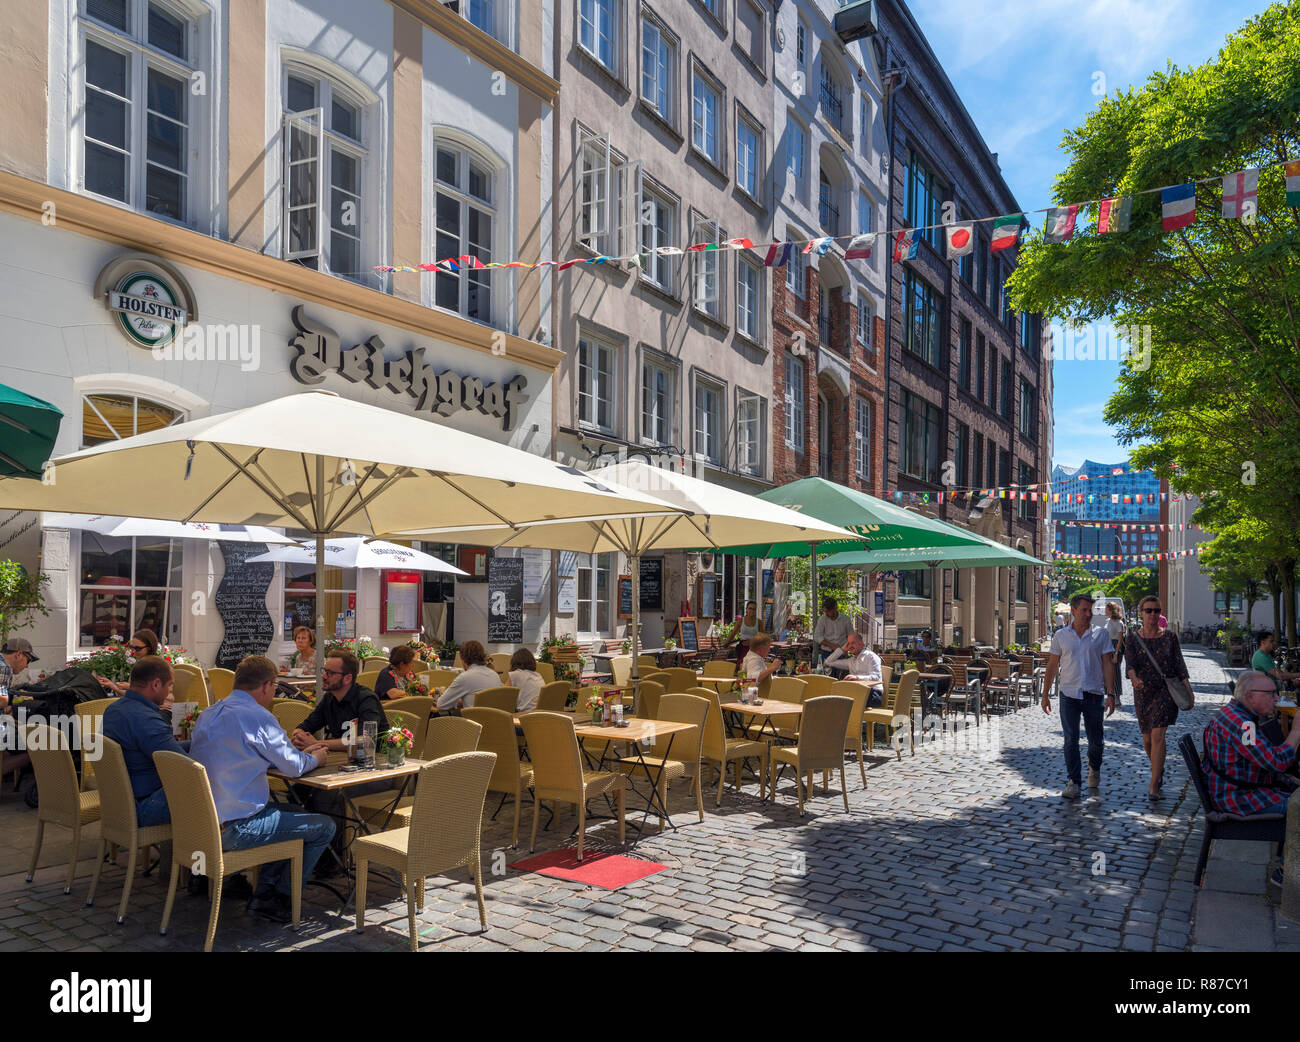 Cafeterías y bares en la histórica (Deichstraße Deichstrasse) en el Altstadt (casco antiguo), Hamburgo, Alemania. Foto de stock